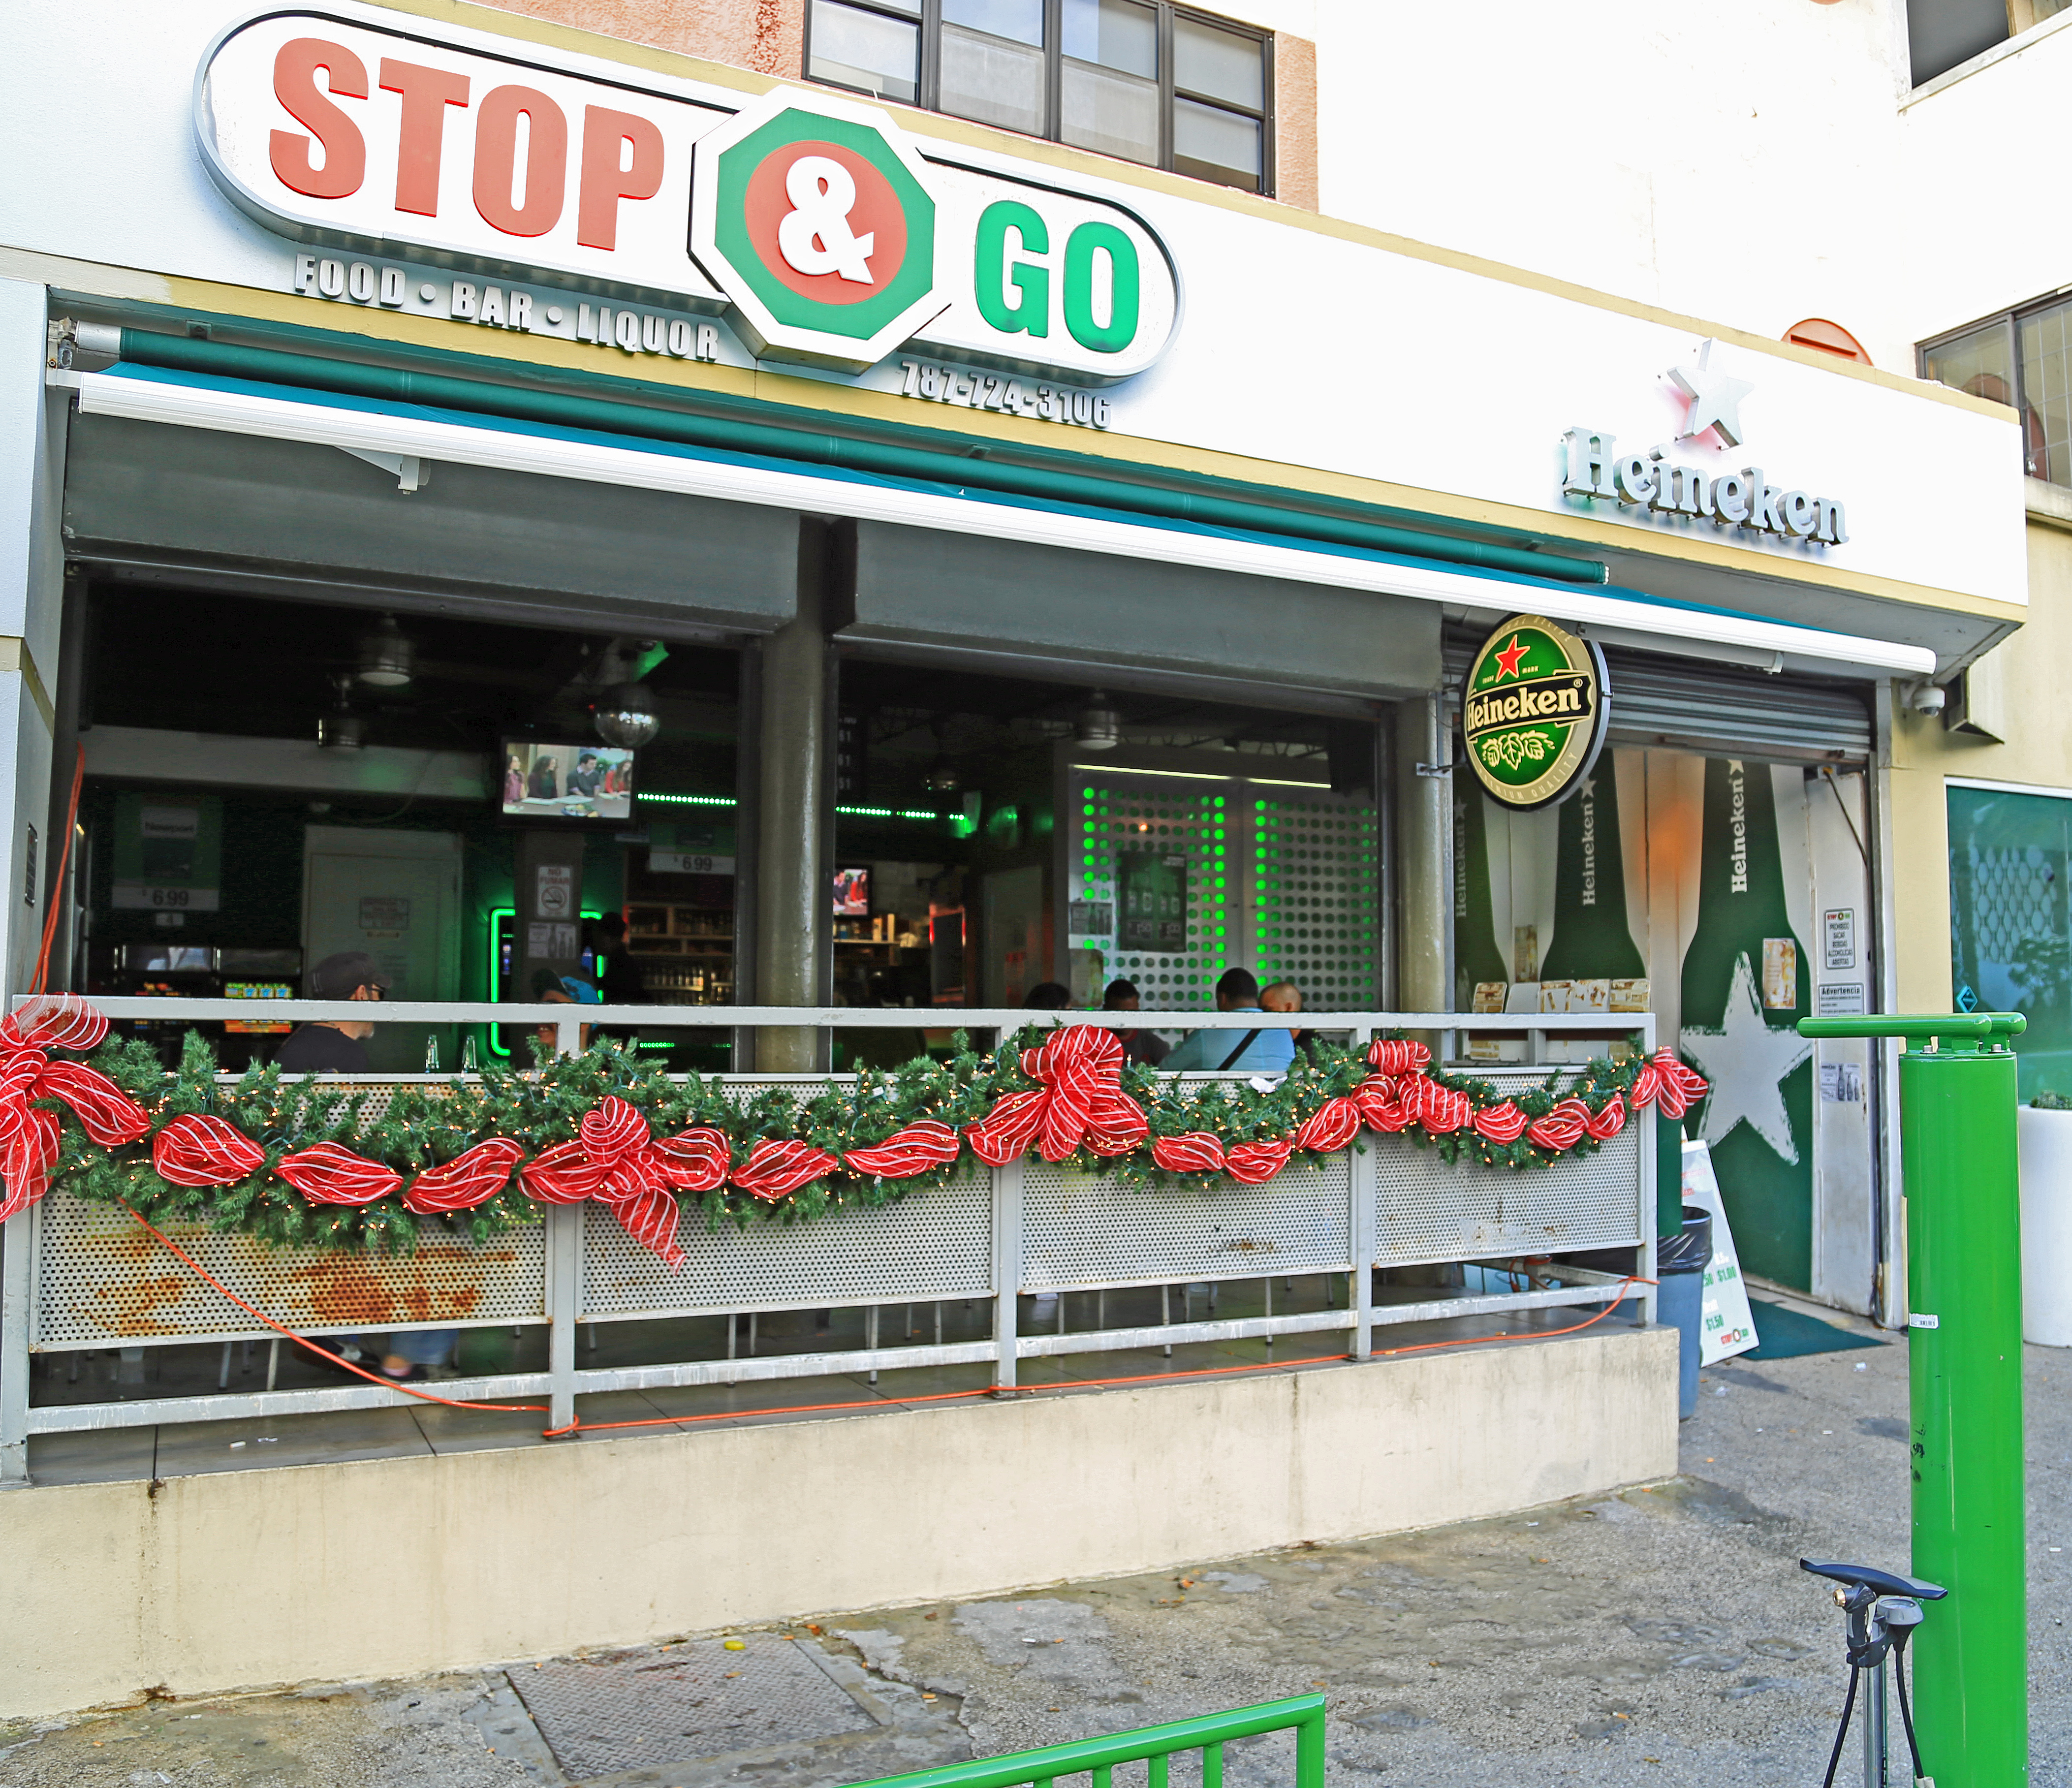 USA - Puerto Rico - San Juan - Stop & Go Food Bar & Liquor